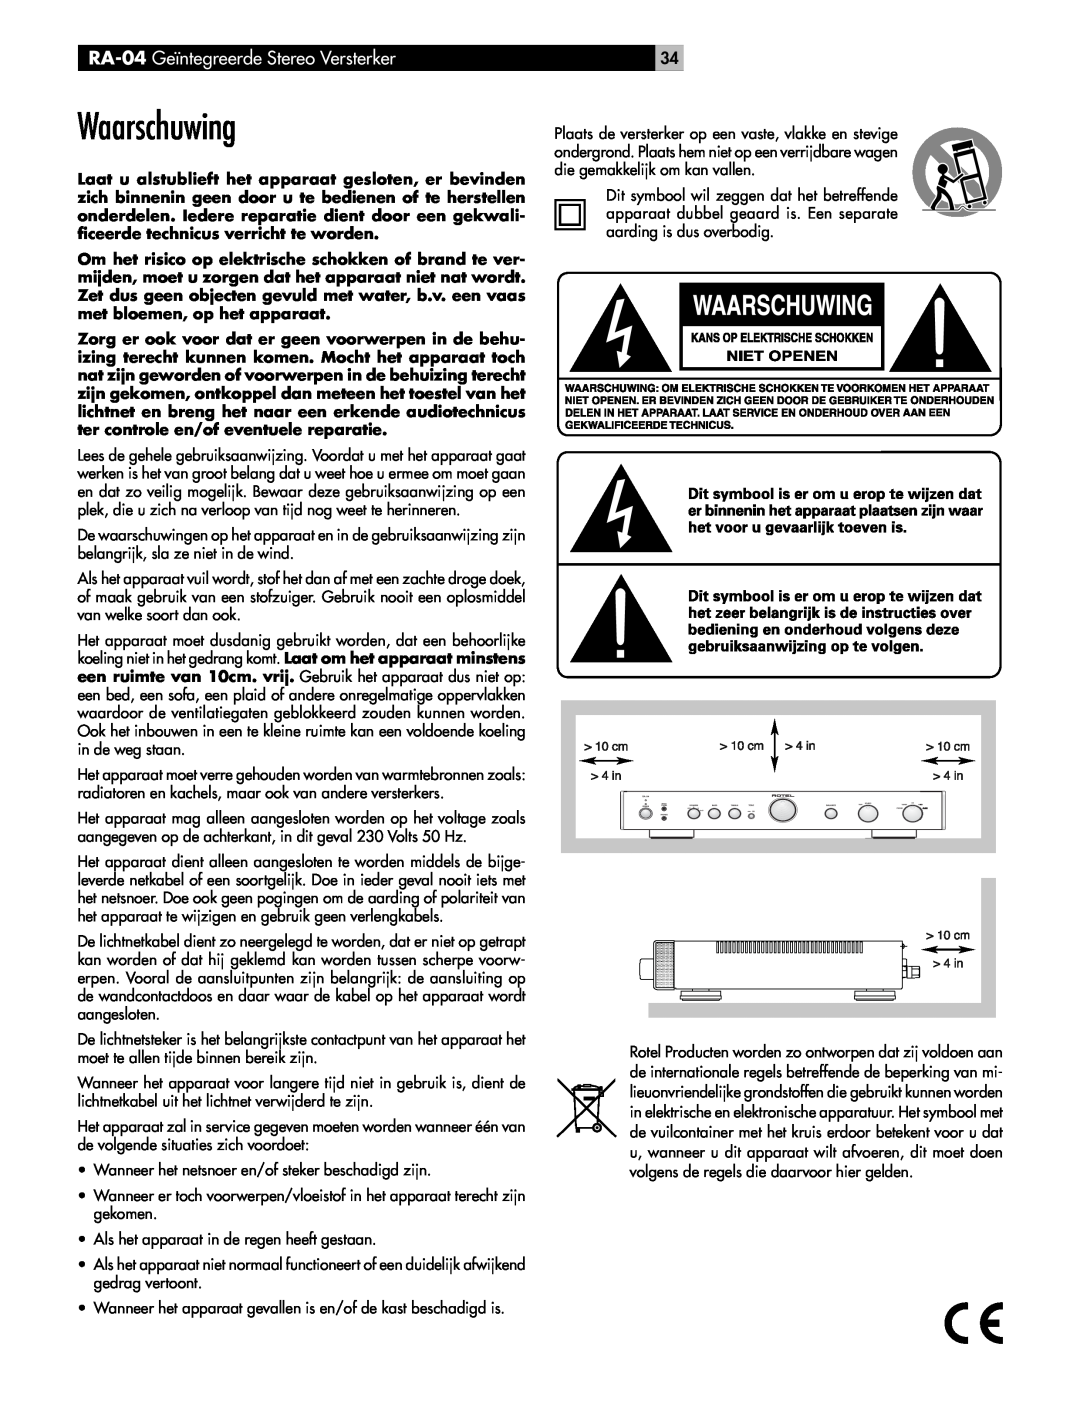 Rotel owner manual Waarschuwing, RA-04 Geïntegreerde Stereo Versterker 